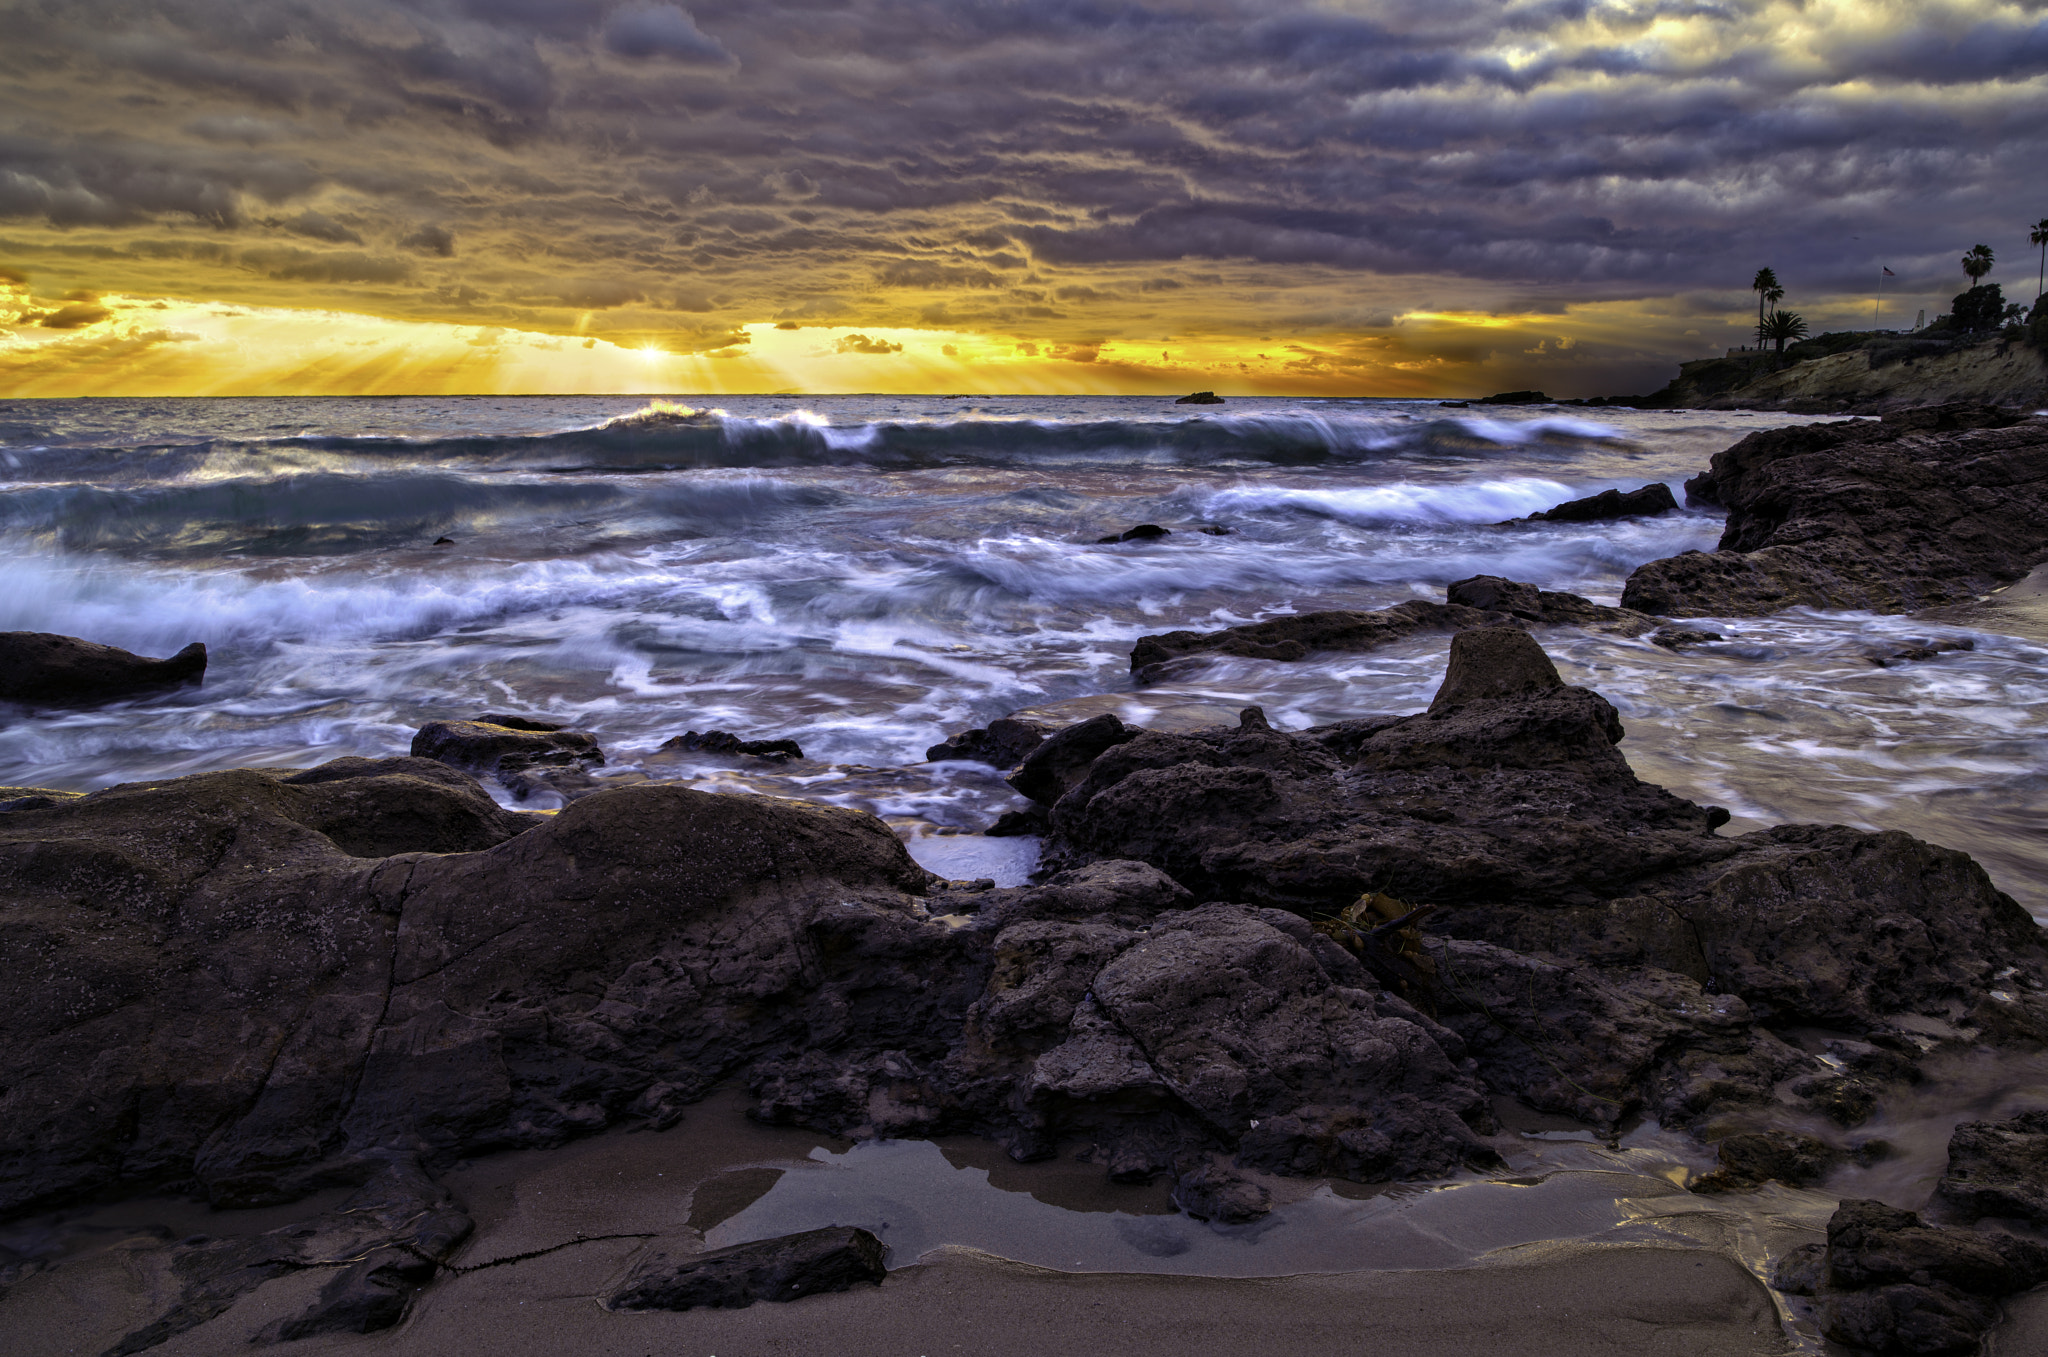 HD Pentax-DA645 28-45mm F4.5ED AW SR sample photo. Laguna beach sunset photography